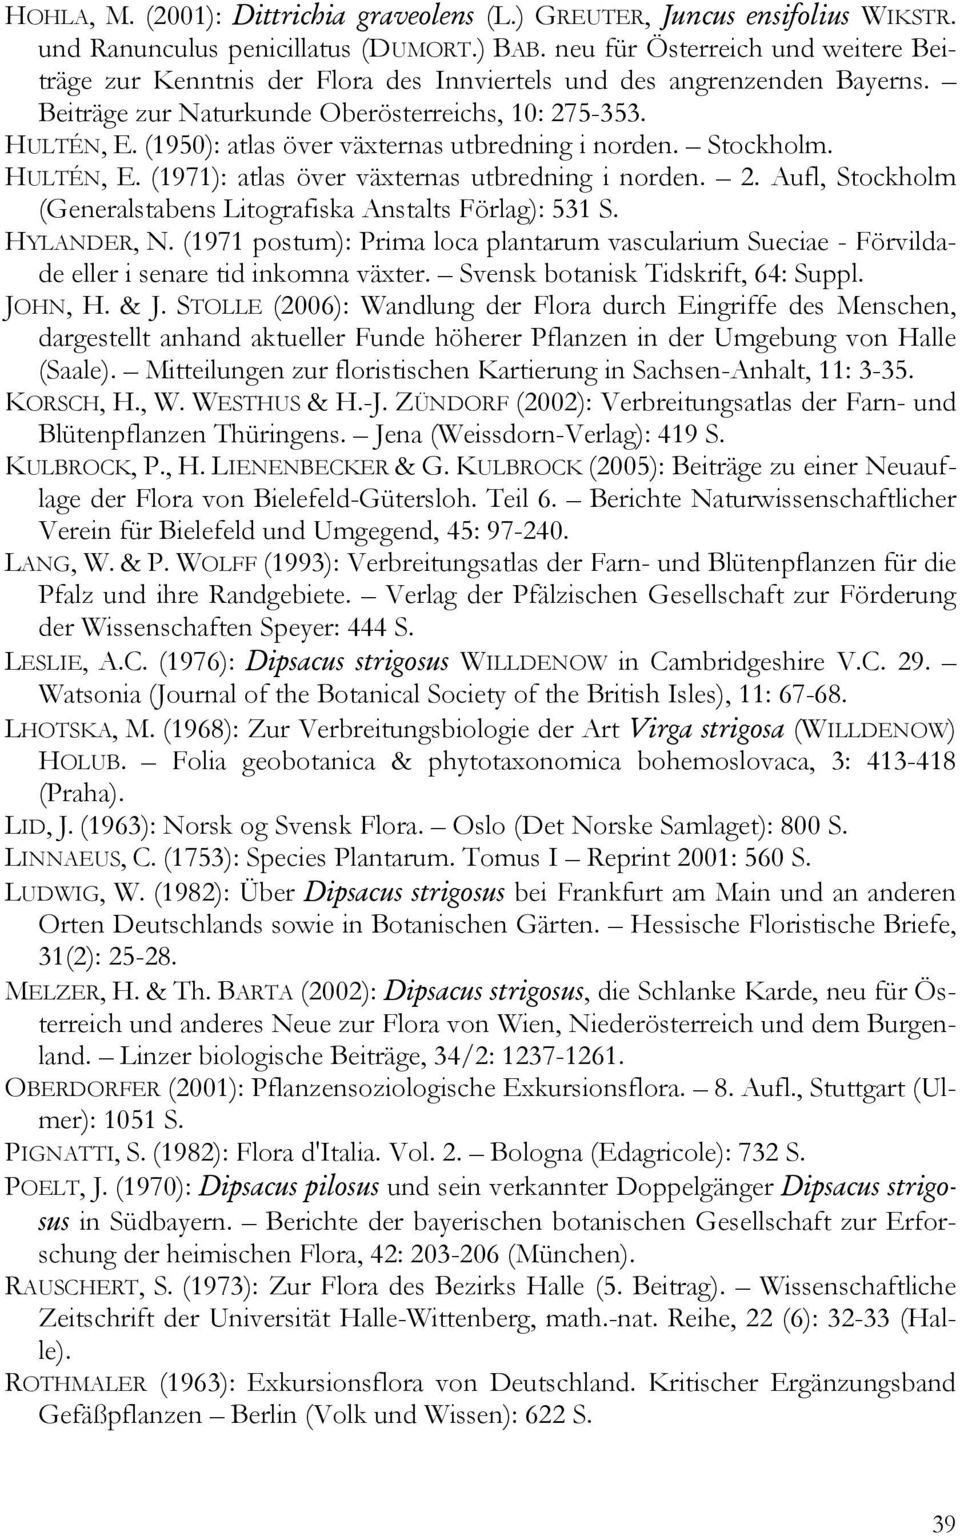 (1950): atlas över växternas utbredning i norden. Stockholm. HULTÉN, E. (1971): atlas över växternas utbredning i norden. 2. Aufl, Stockholm (Generalstabens Litografiska Anstalts Förlag): 531 S.